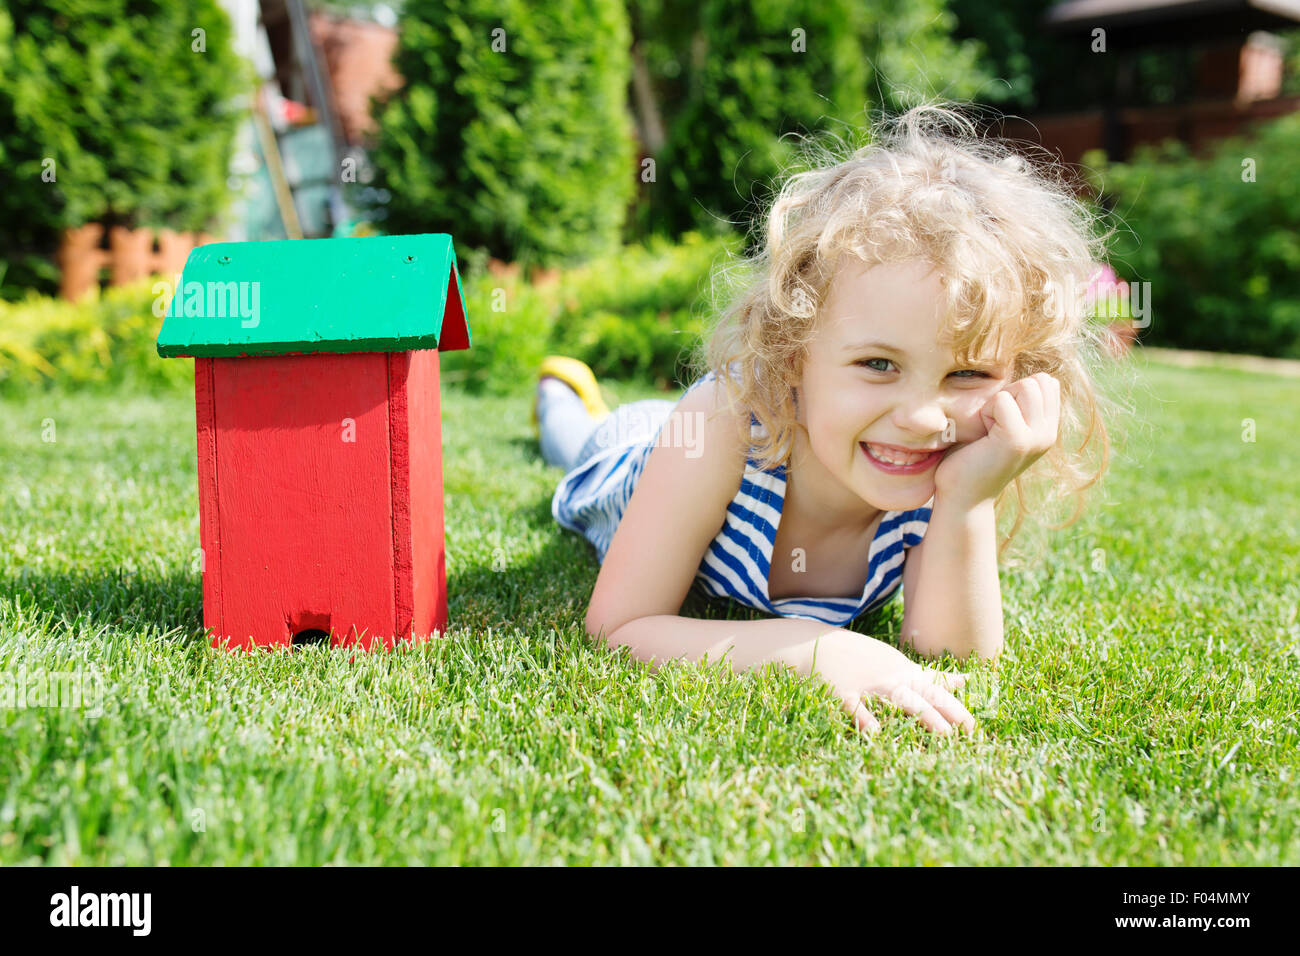 Maquette en bois de la maison et de la petite fille blonde allongée sur l'herbe verte. Concept immobilier Banque D'Images